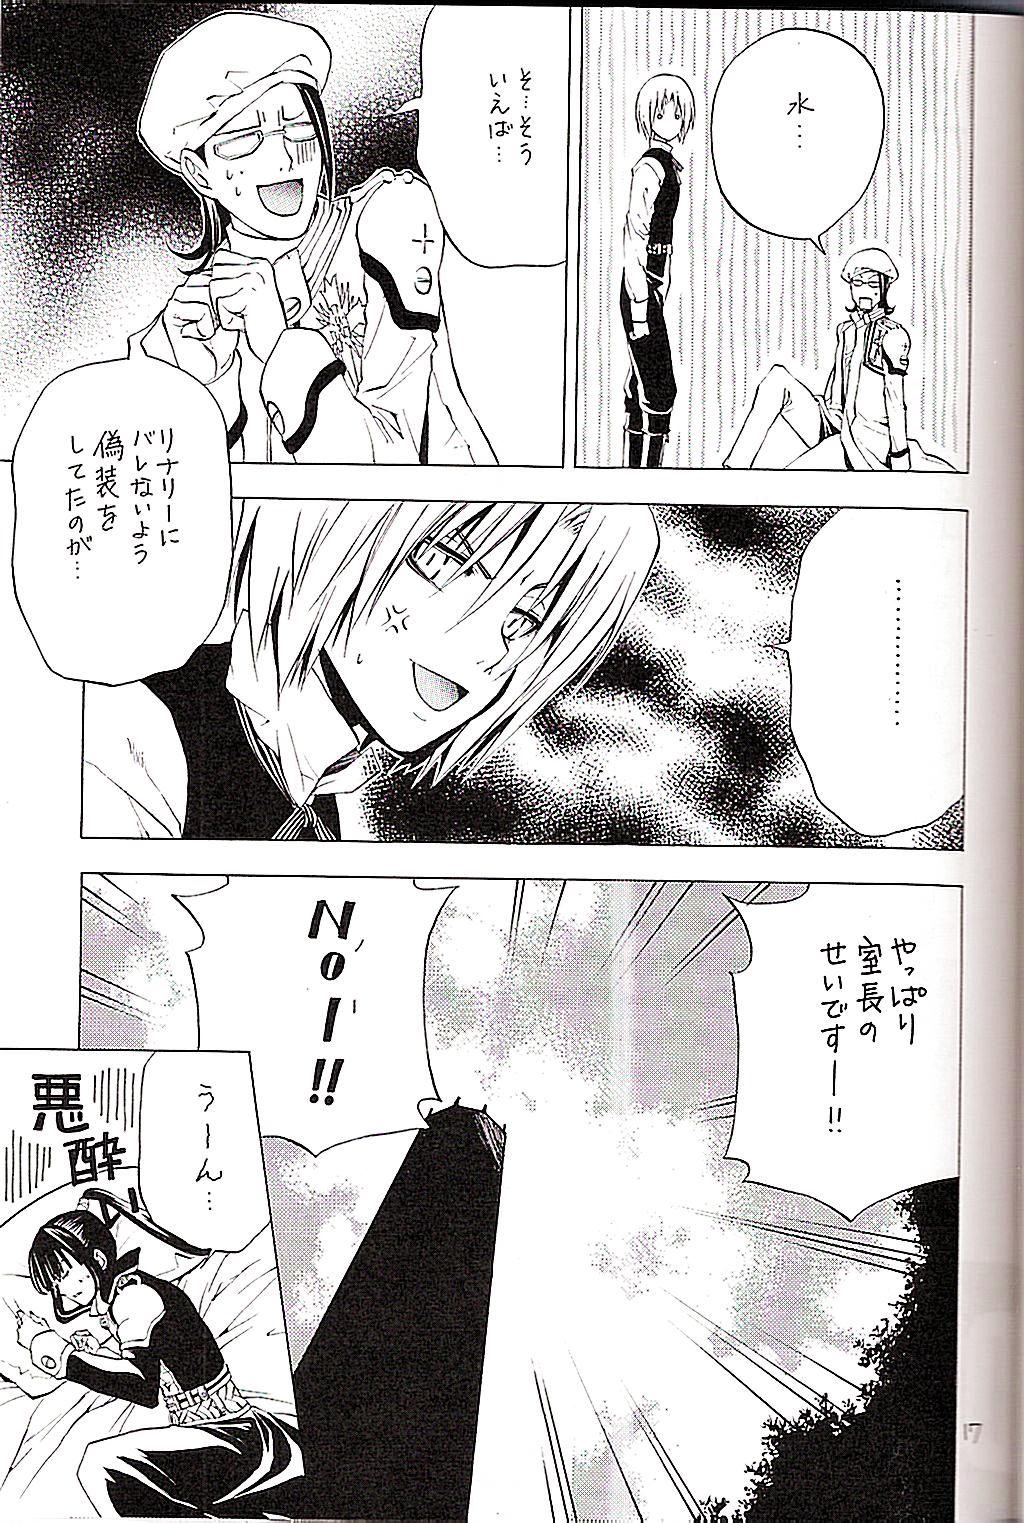 (Mimiket 12) [A.A.O (Shinohara Hana)] CRUSADER (D.Gray-man) page 17 full